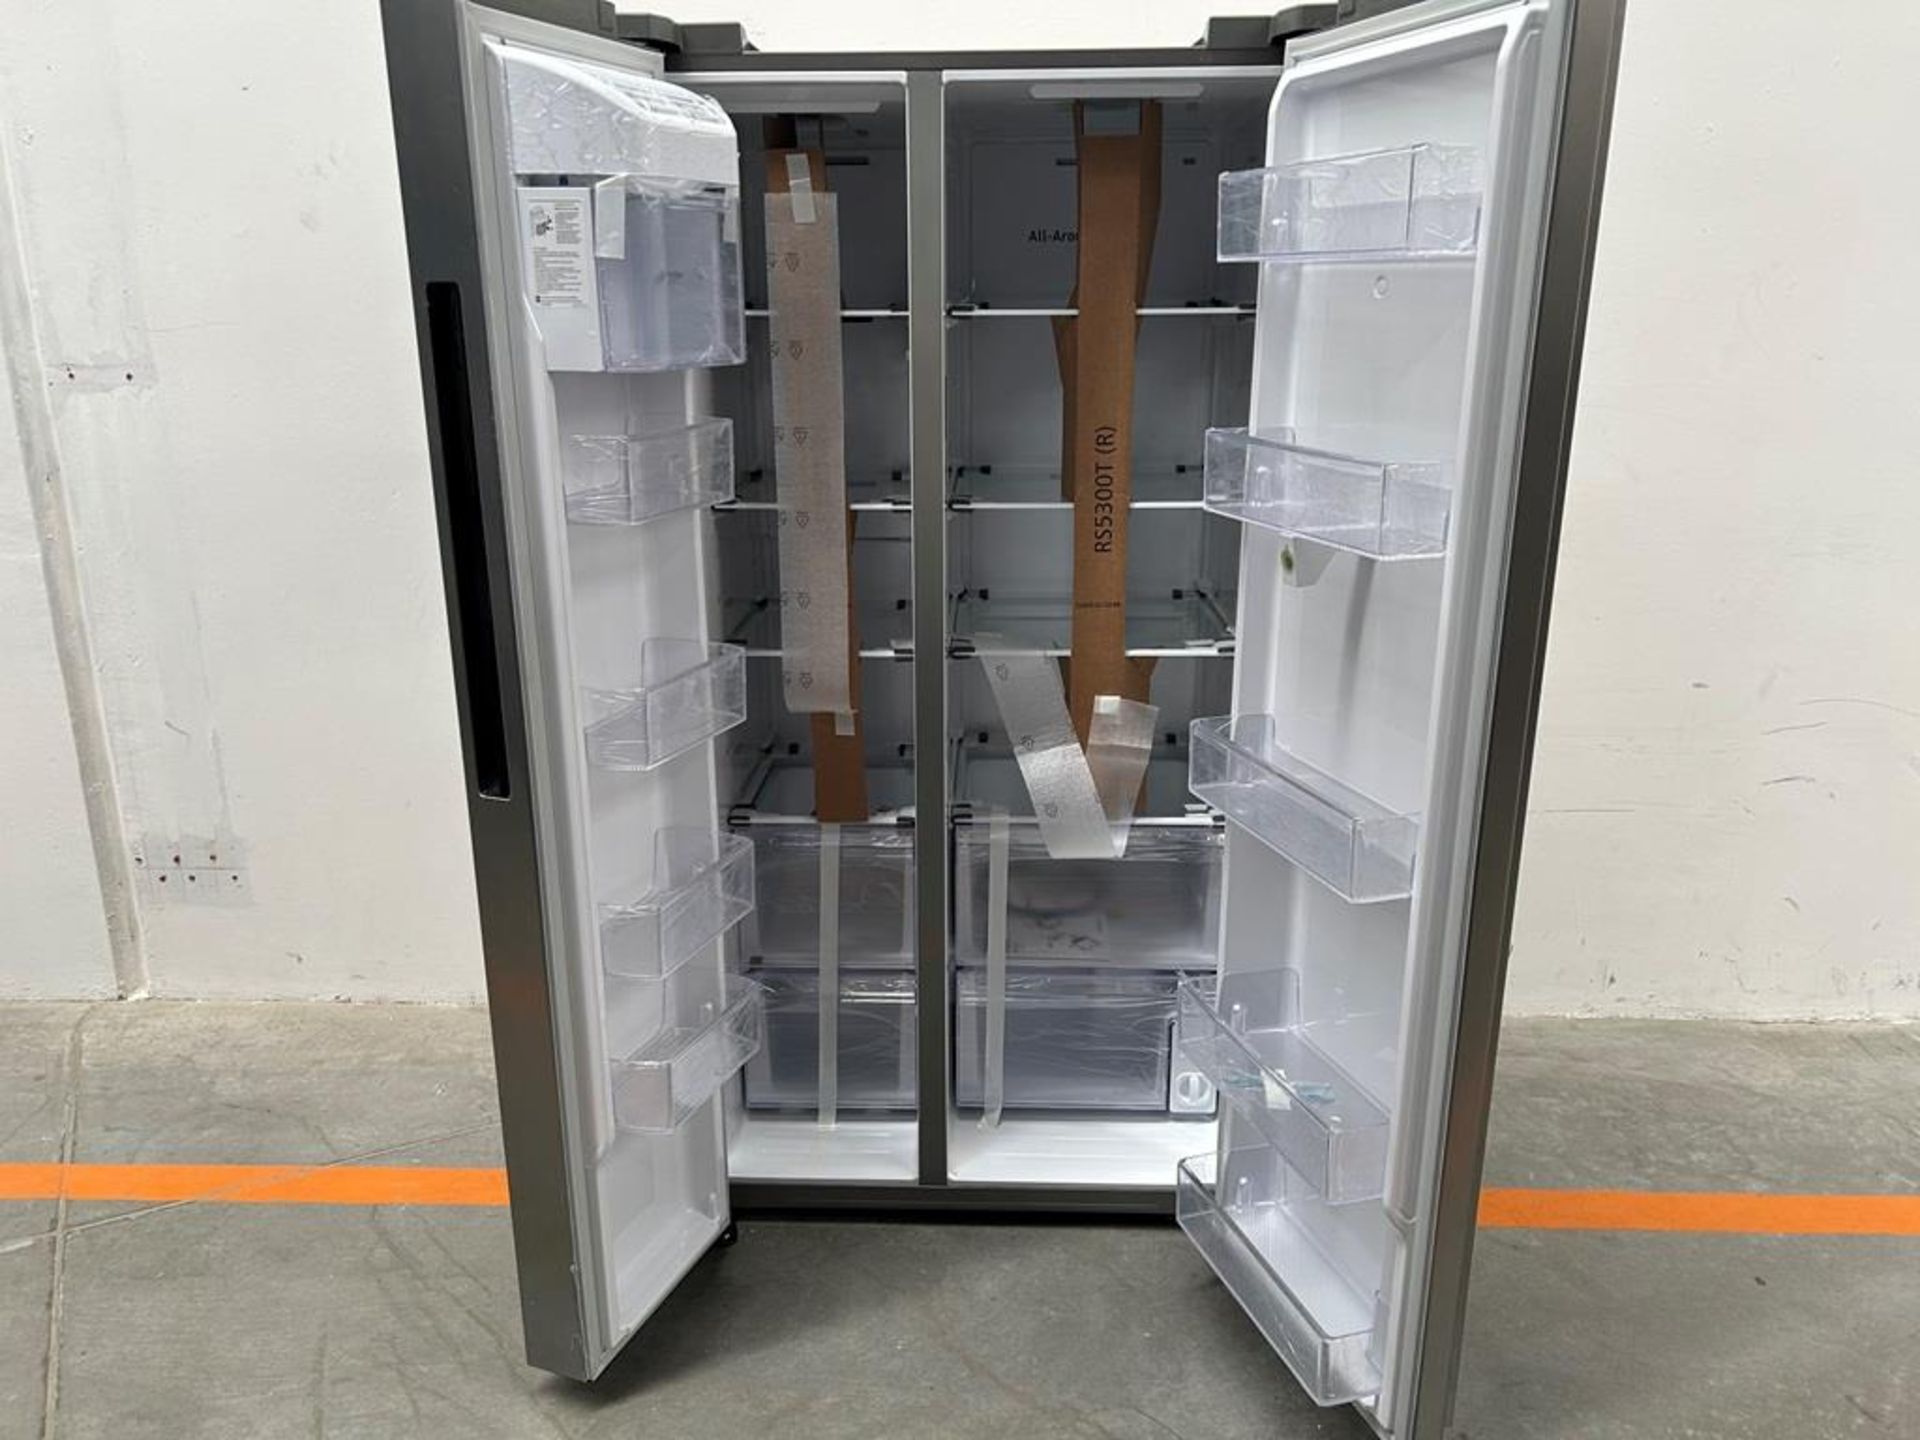 (NUEVO) Refrigerador Marca SAMSUNG, Modelo RS28A5F61S9, Serie 000015V, Color GRIS - Image 5 of 10